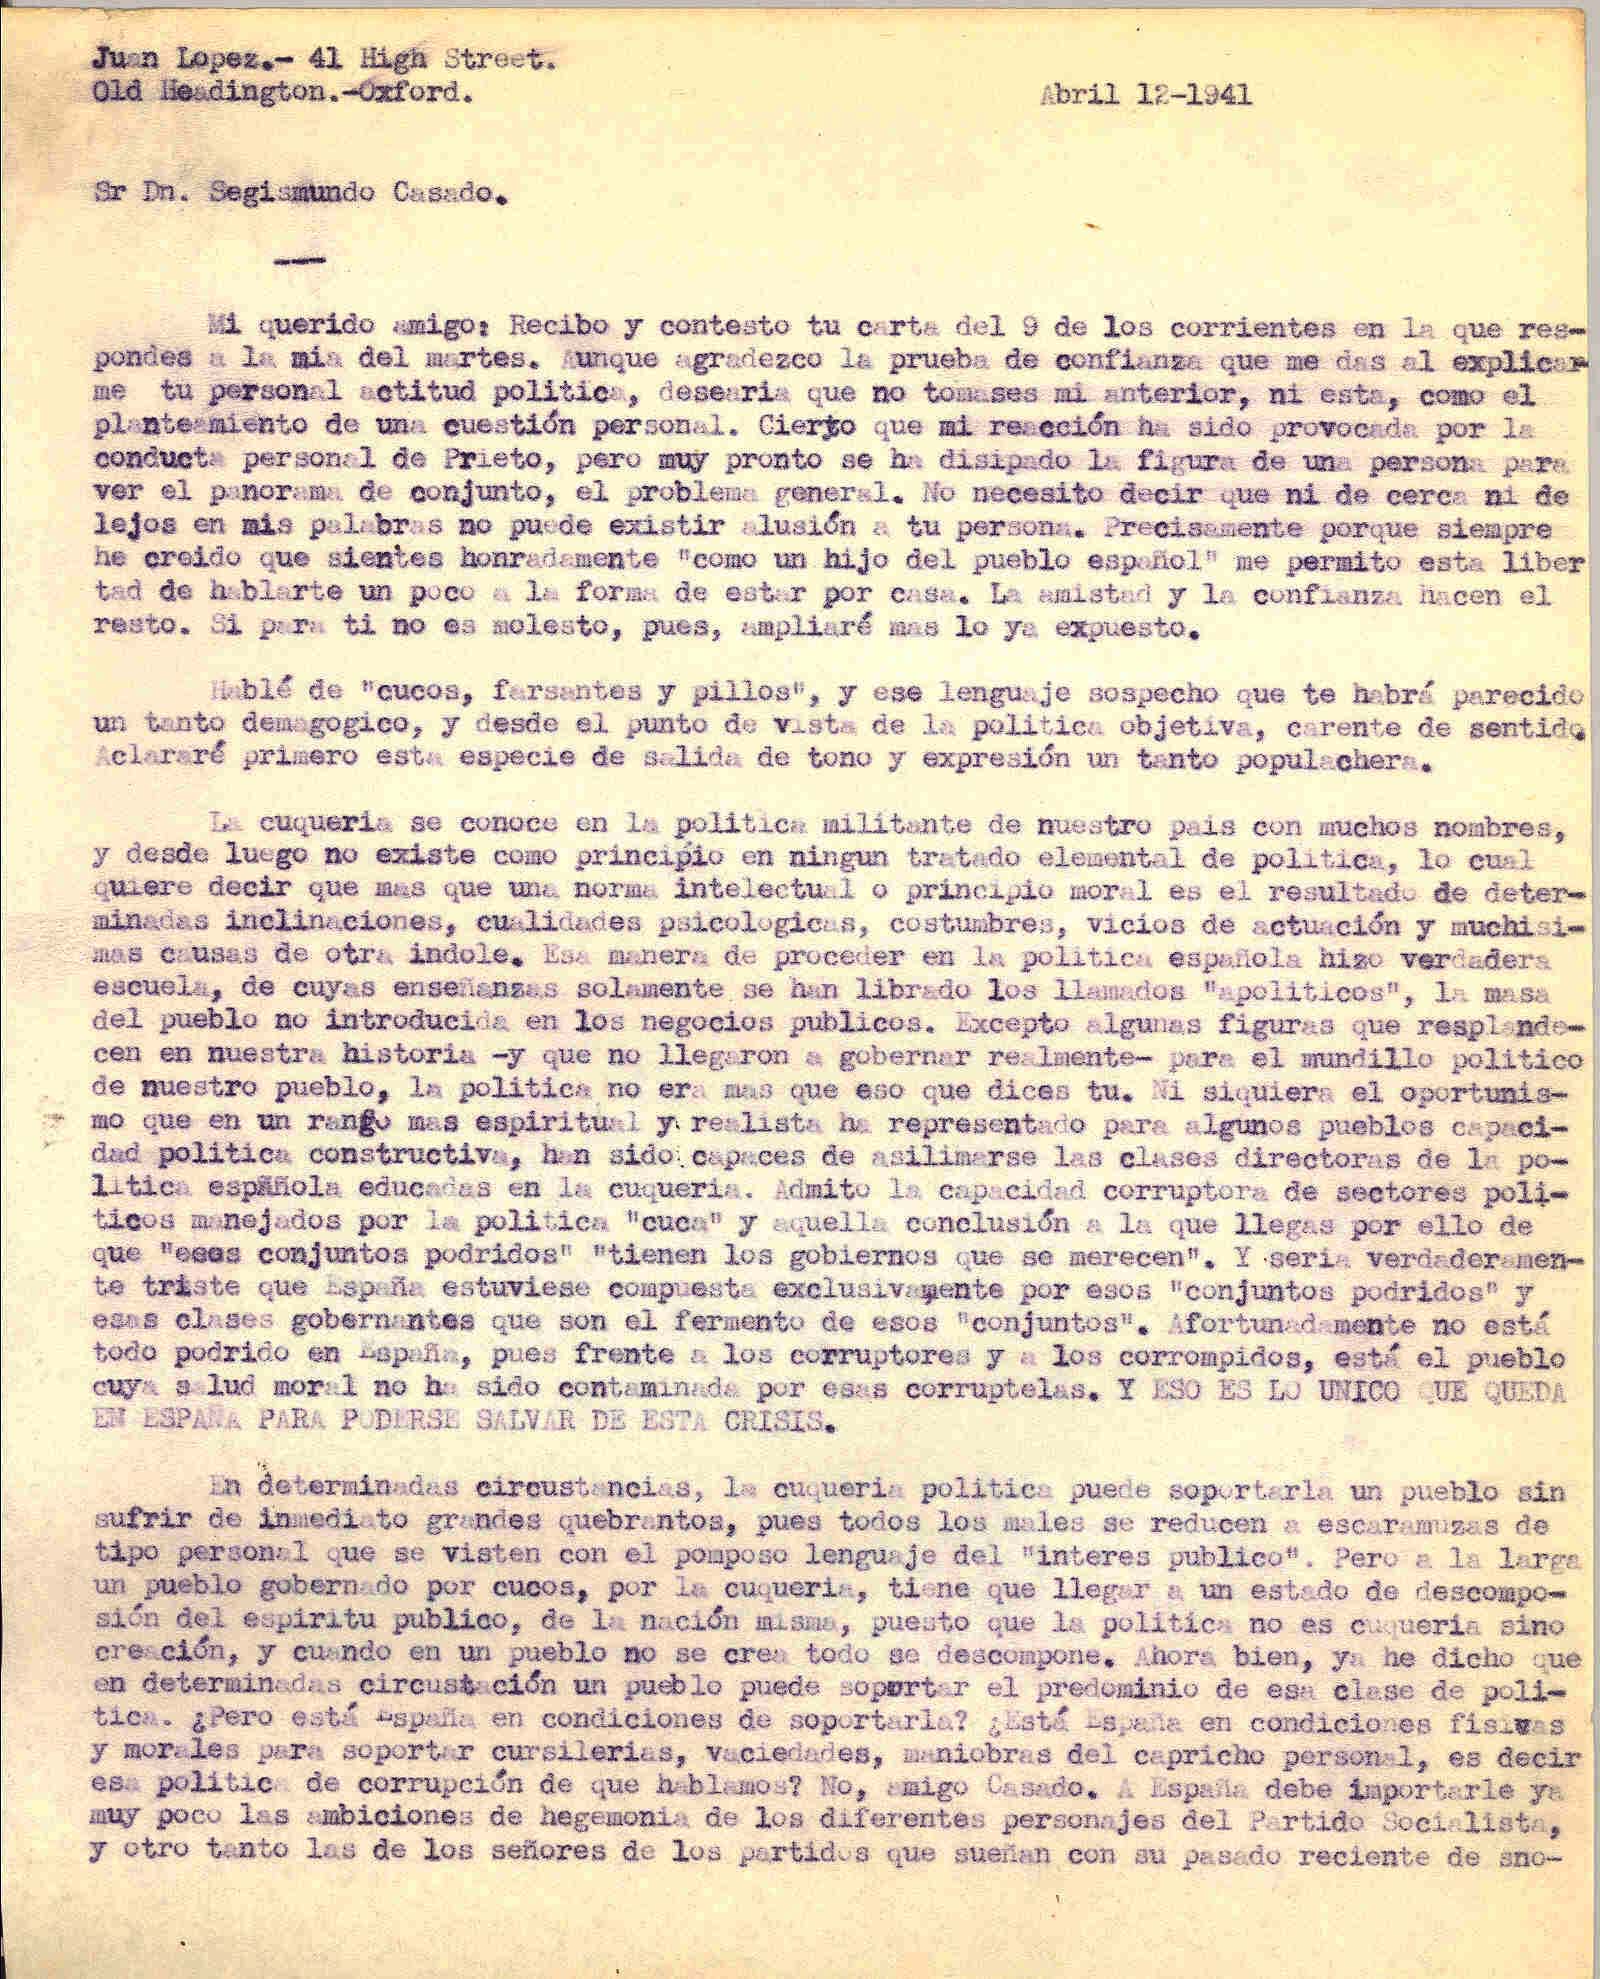 Carta a Segismundo Casado comentando la poca convivencia en la política en España, el nombramiento de Pi i Sunyer como representante de la JARE y los errores cometidos en la política en España ante los hechos de Negrín.